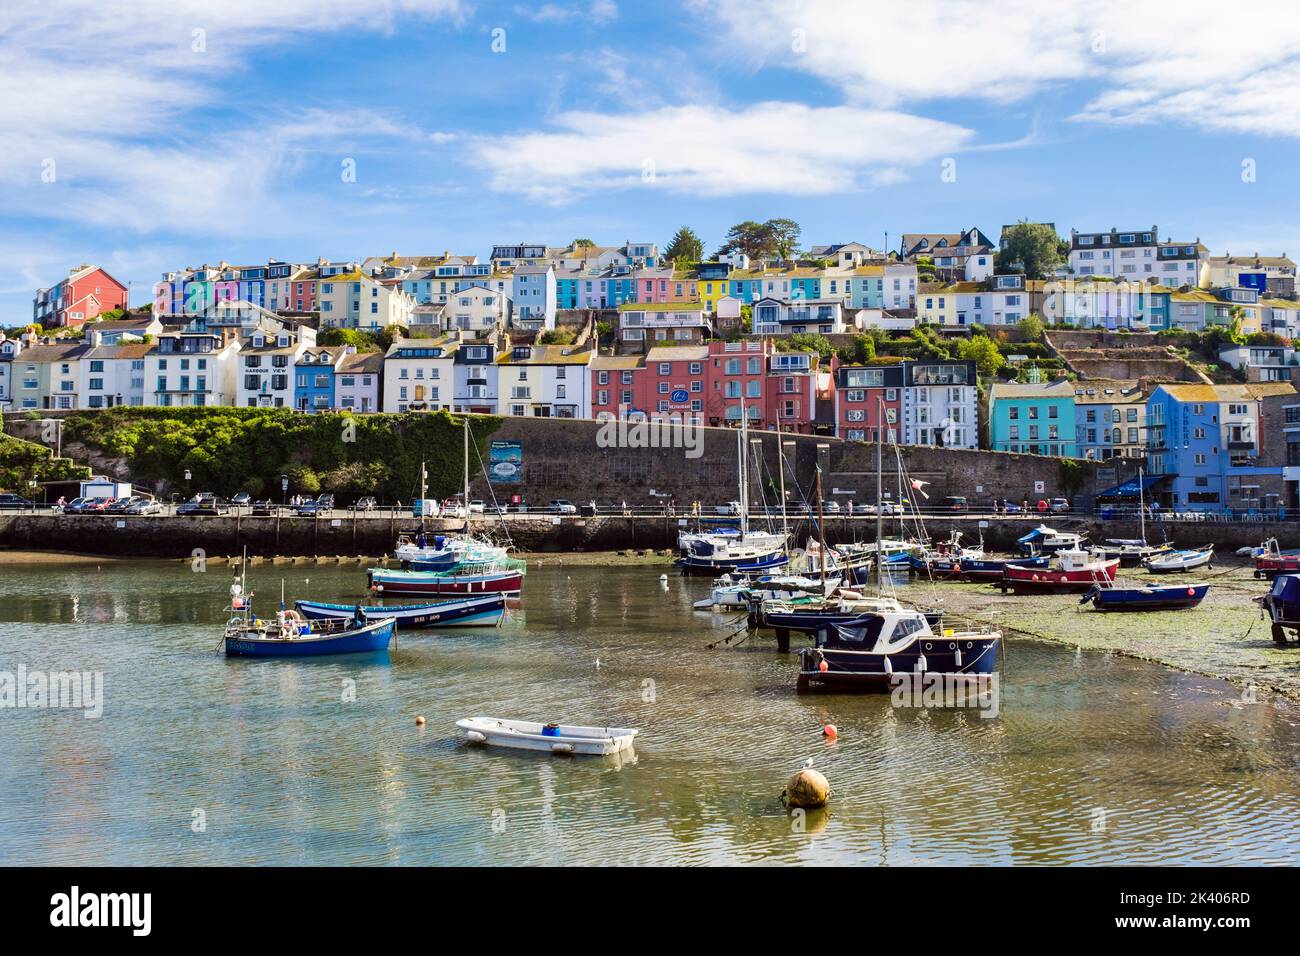 Farbenfrohe Häuser mit Blick auf den inneren Hafen. Brixham, Devon, England, Großbritannien Stockfoto